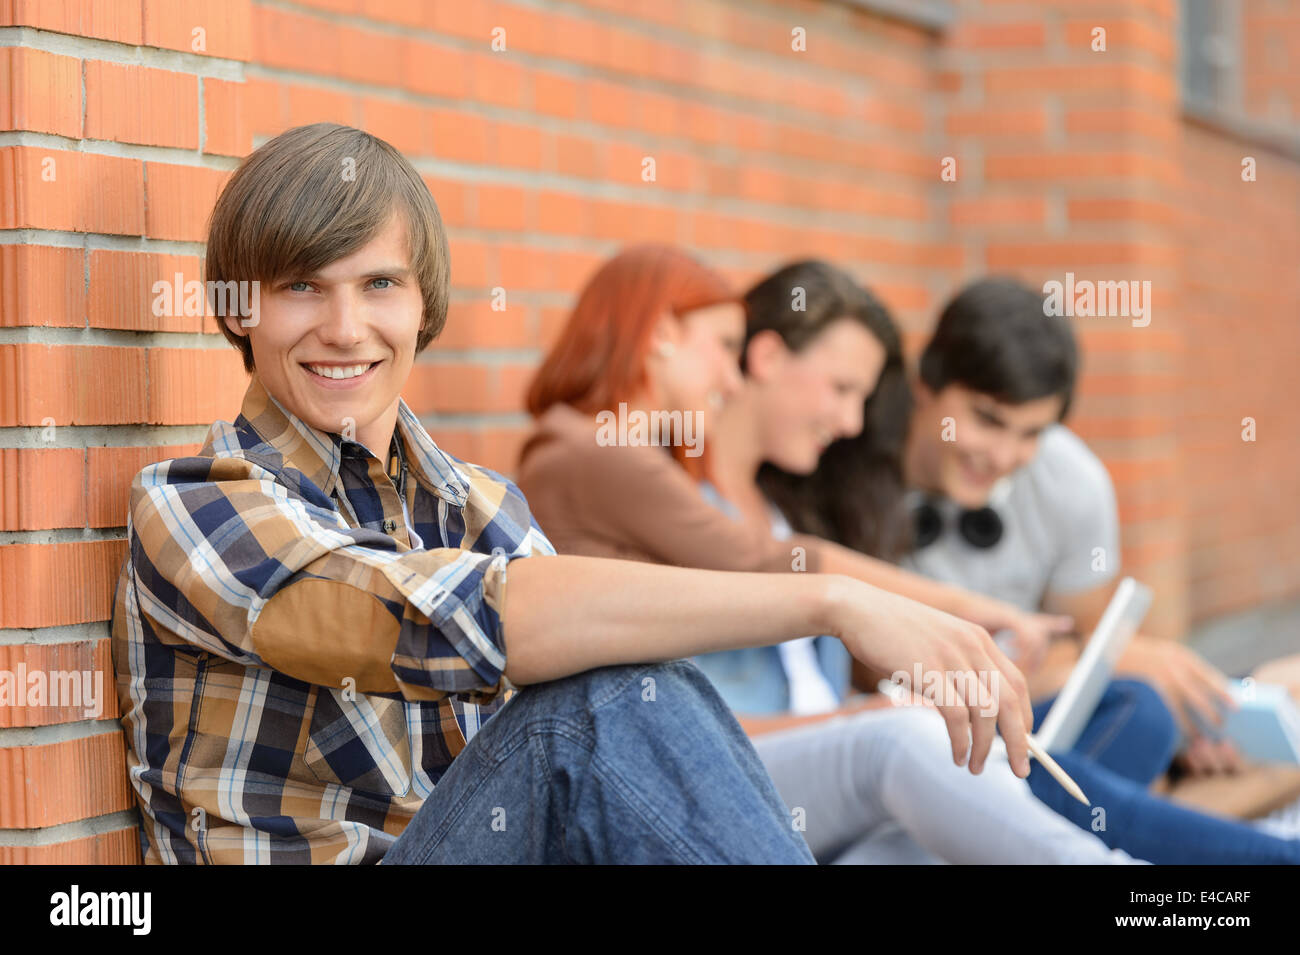 Élève garçon assis par brick wall friends smiling in background Banque D'Images